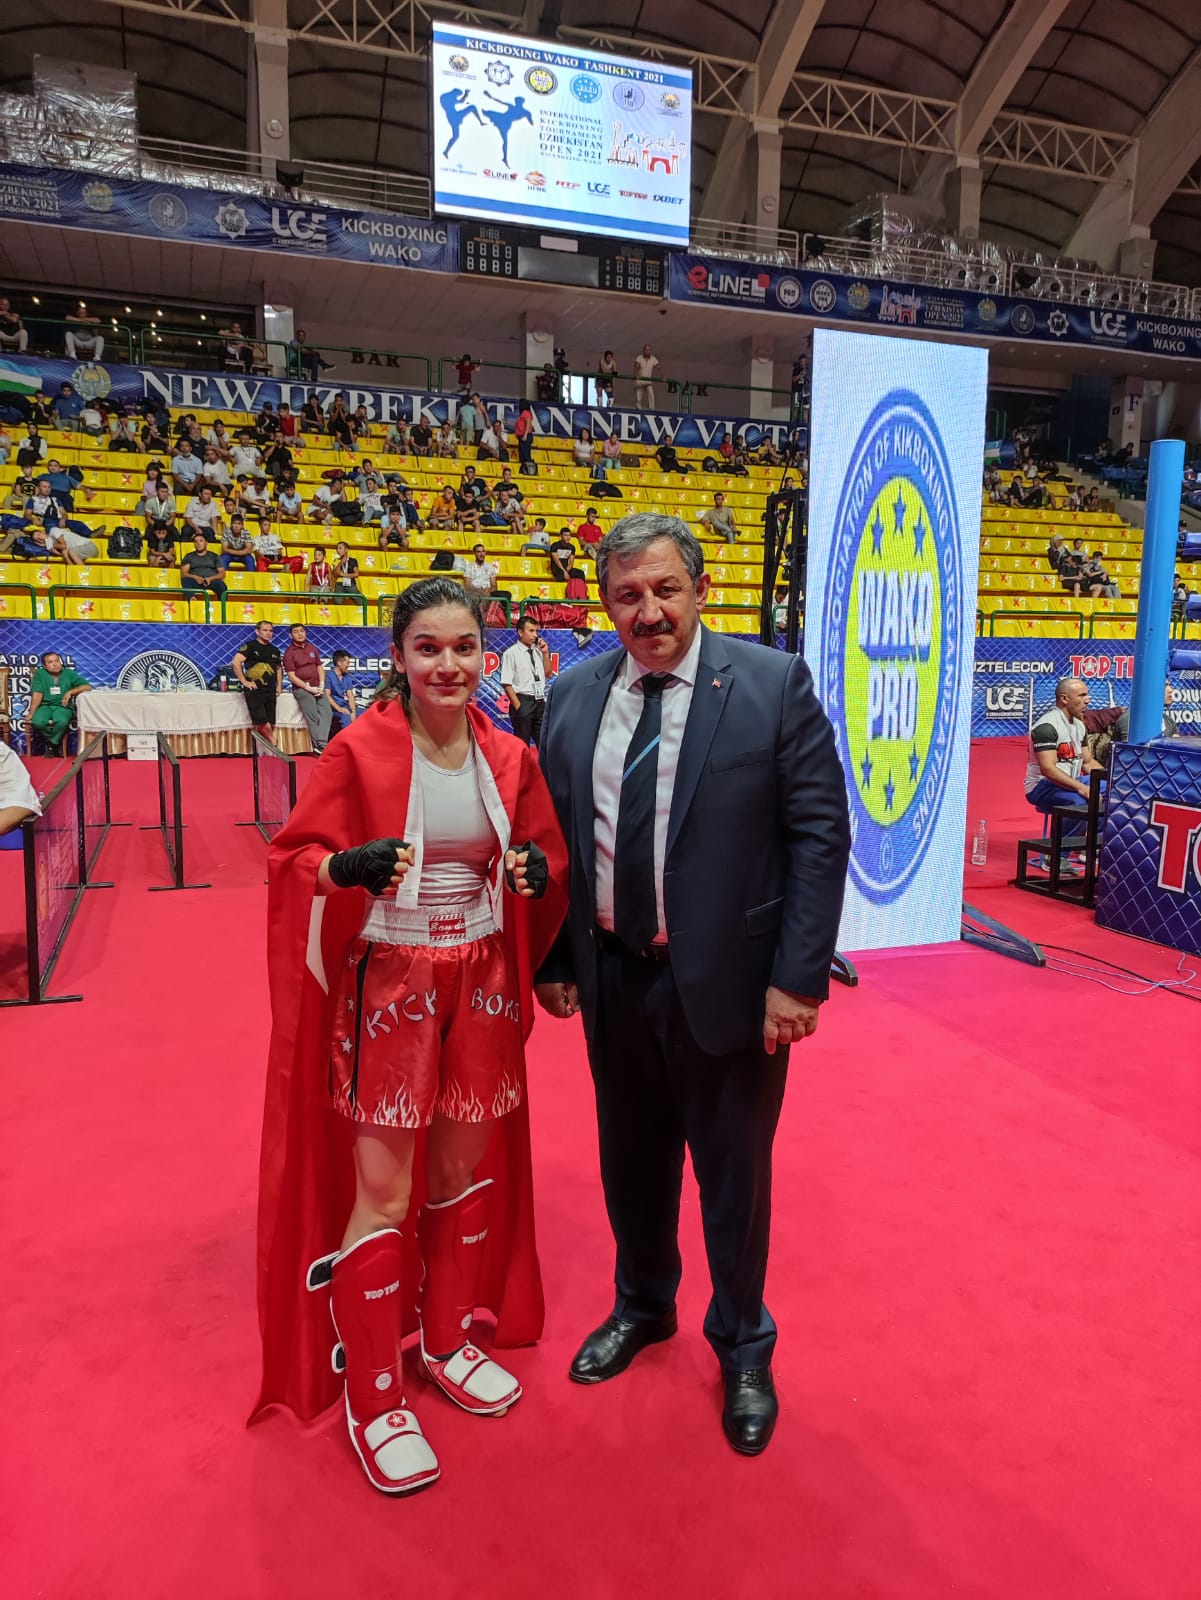 Milli Takımımız Özbekistan' da 7 Altın, 4 Gümüş Madalya Kazandı